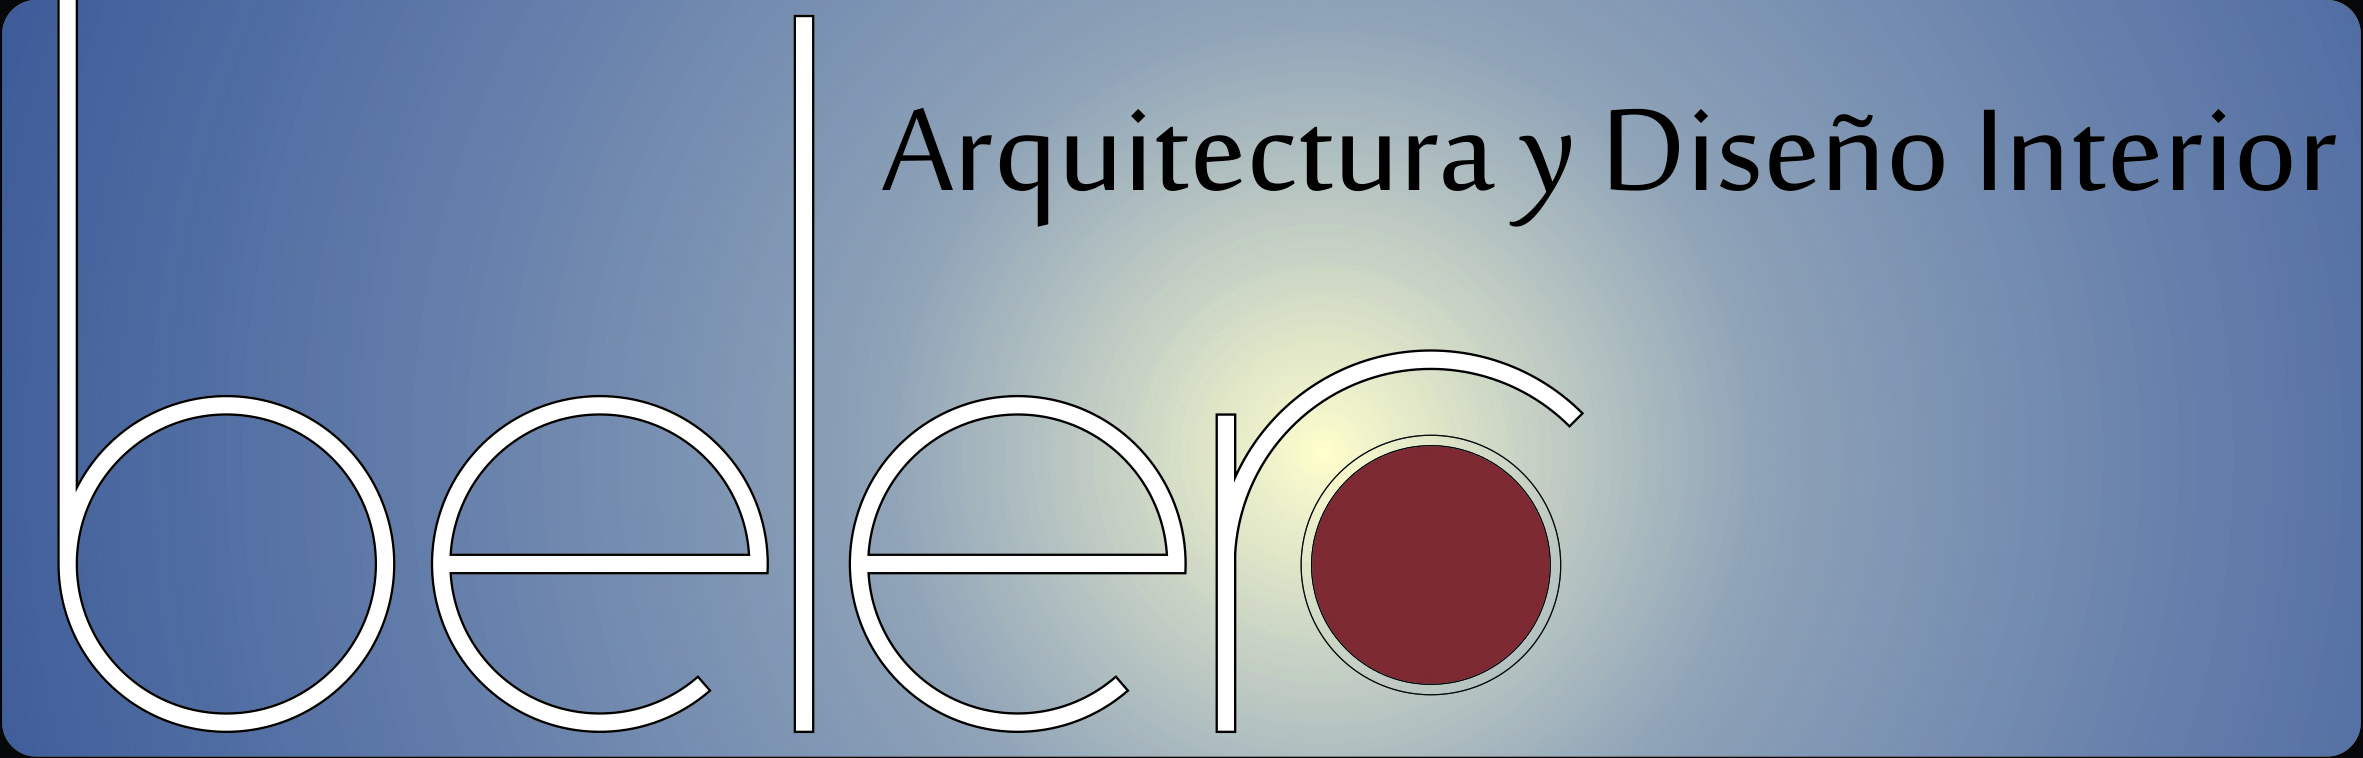 Belero - Arquitectura y Diseño Interior logo